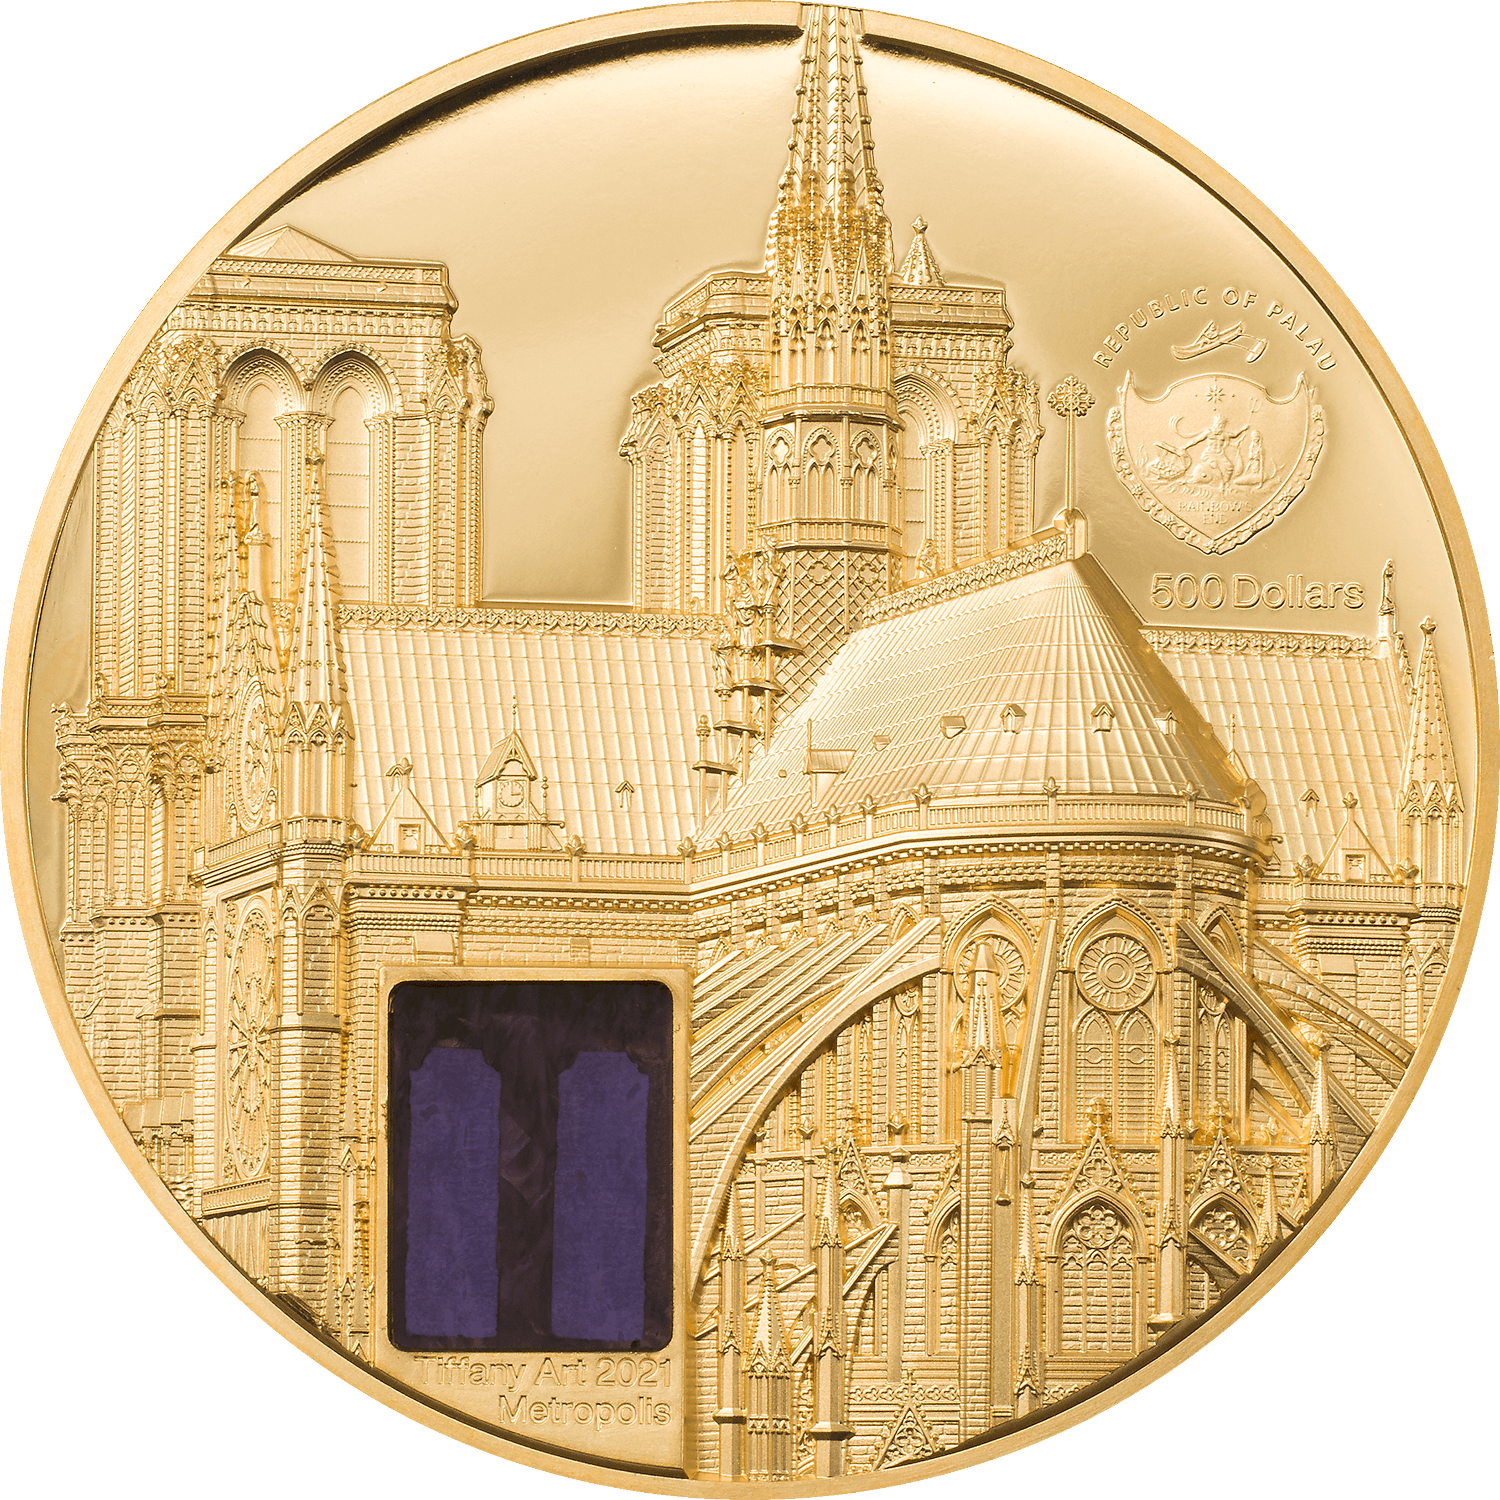 NOTRE DAME DE PARIS Tiffany Art 5 Oz Gold Coin $500 Palau 2021 - PARTHAVA COIN